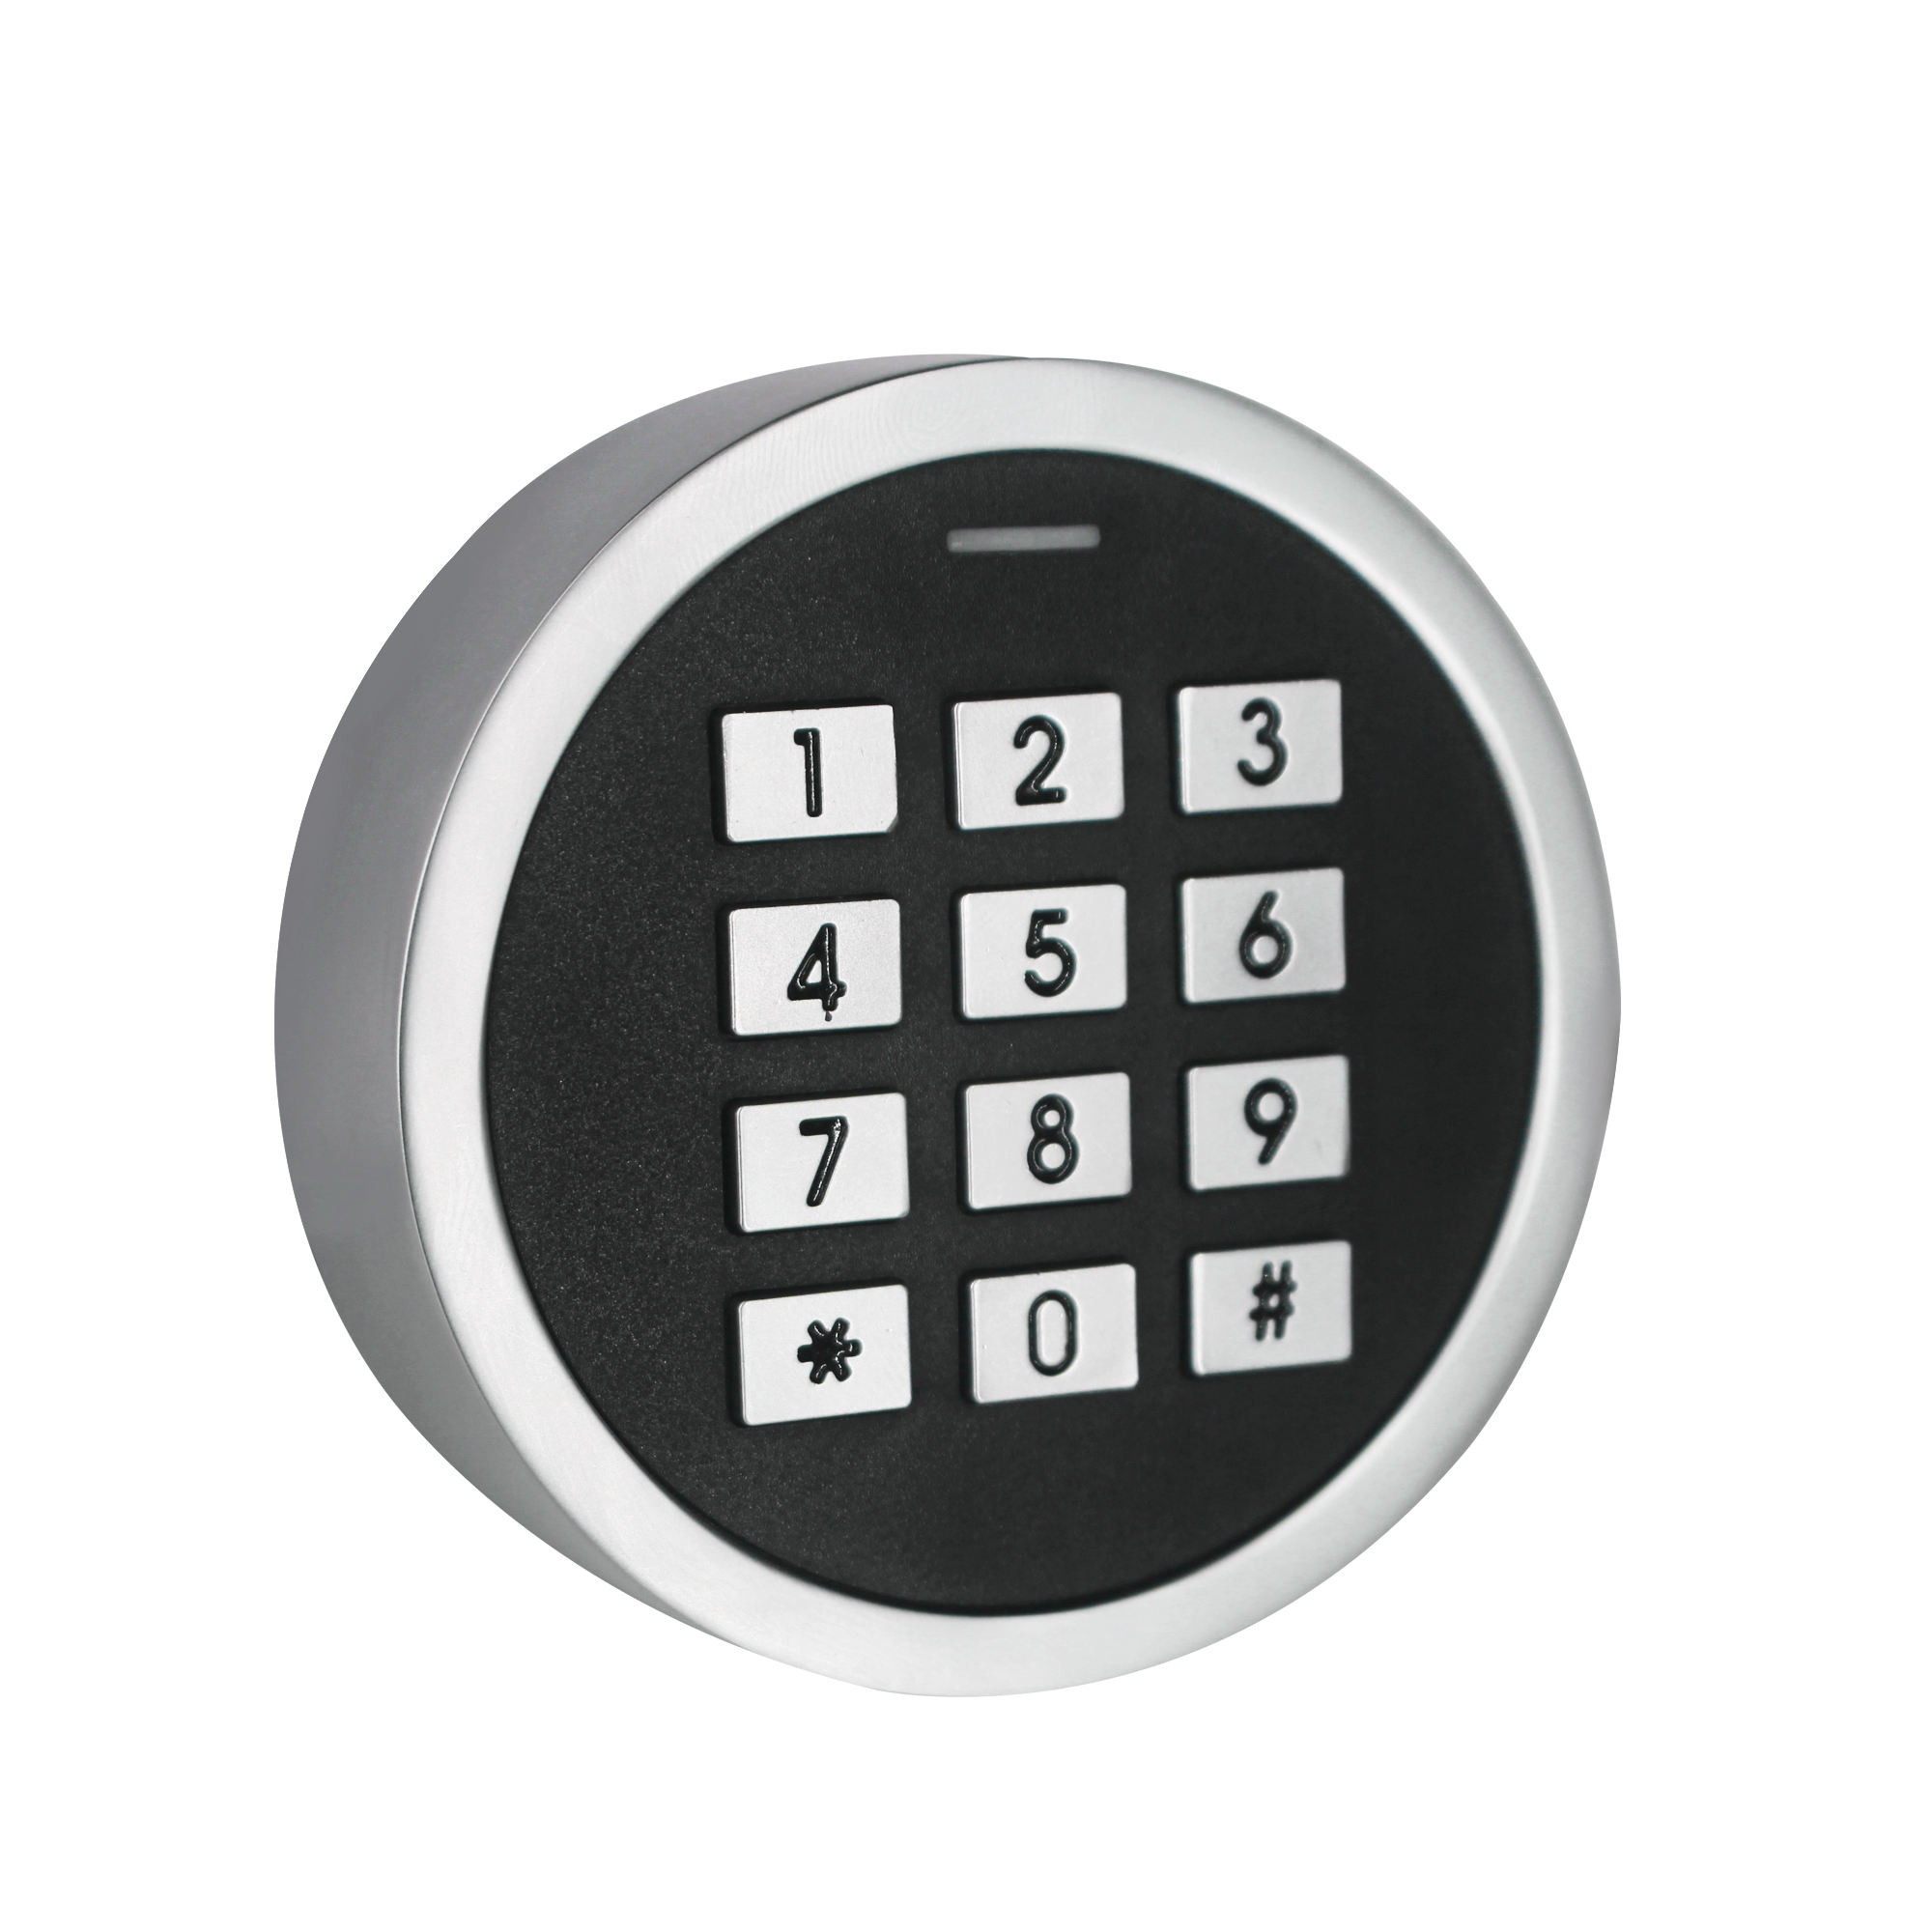 لوحة مفاتيح بلوتوث للتحكم في الوصول الصغير المعدني مع تطبيق TuyaSmart قارئ بطاقة RFID